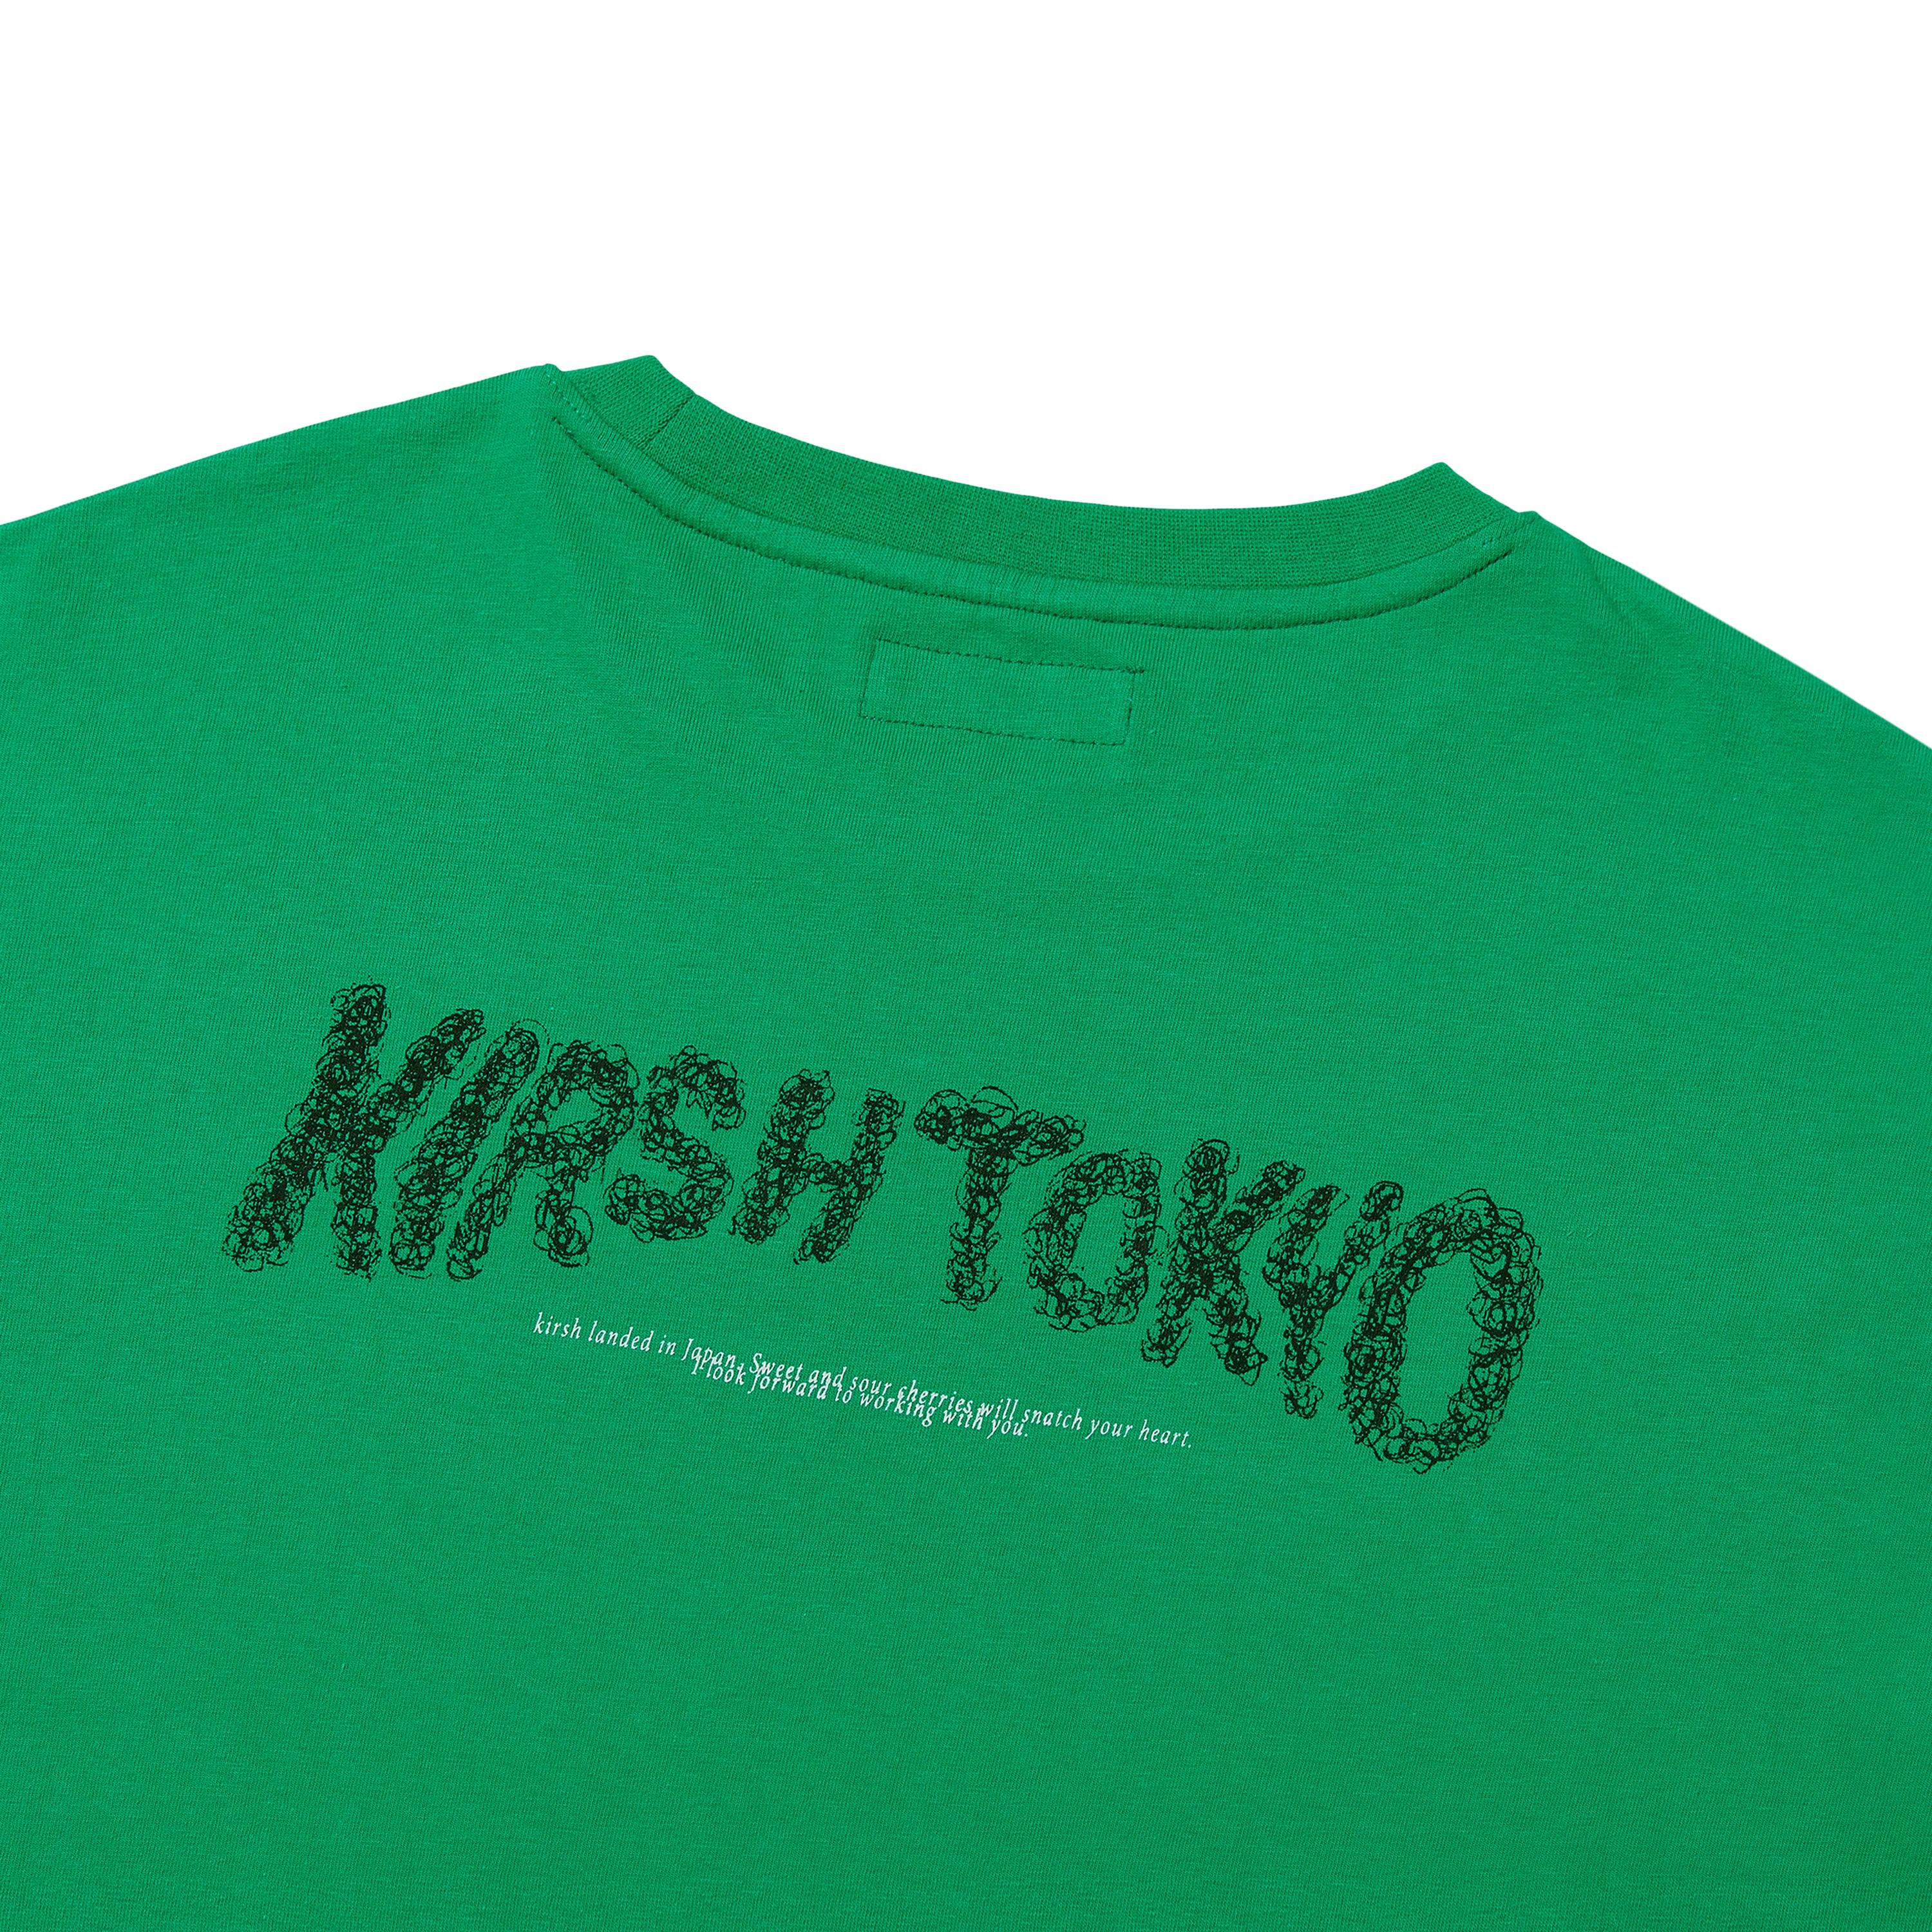 【日本限定】KIRSH X TOKYO ハンドロゴTシャツ【グリーン】